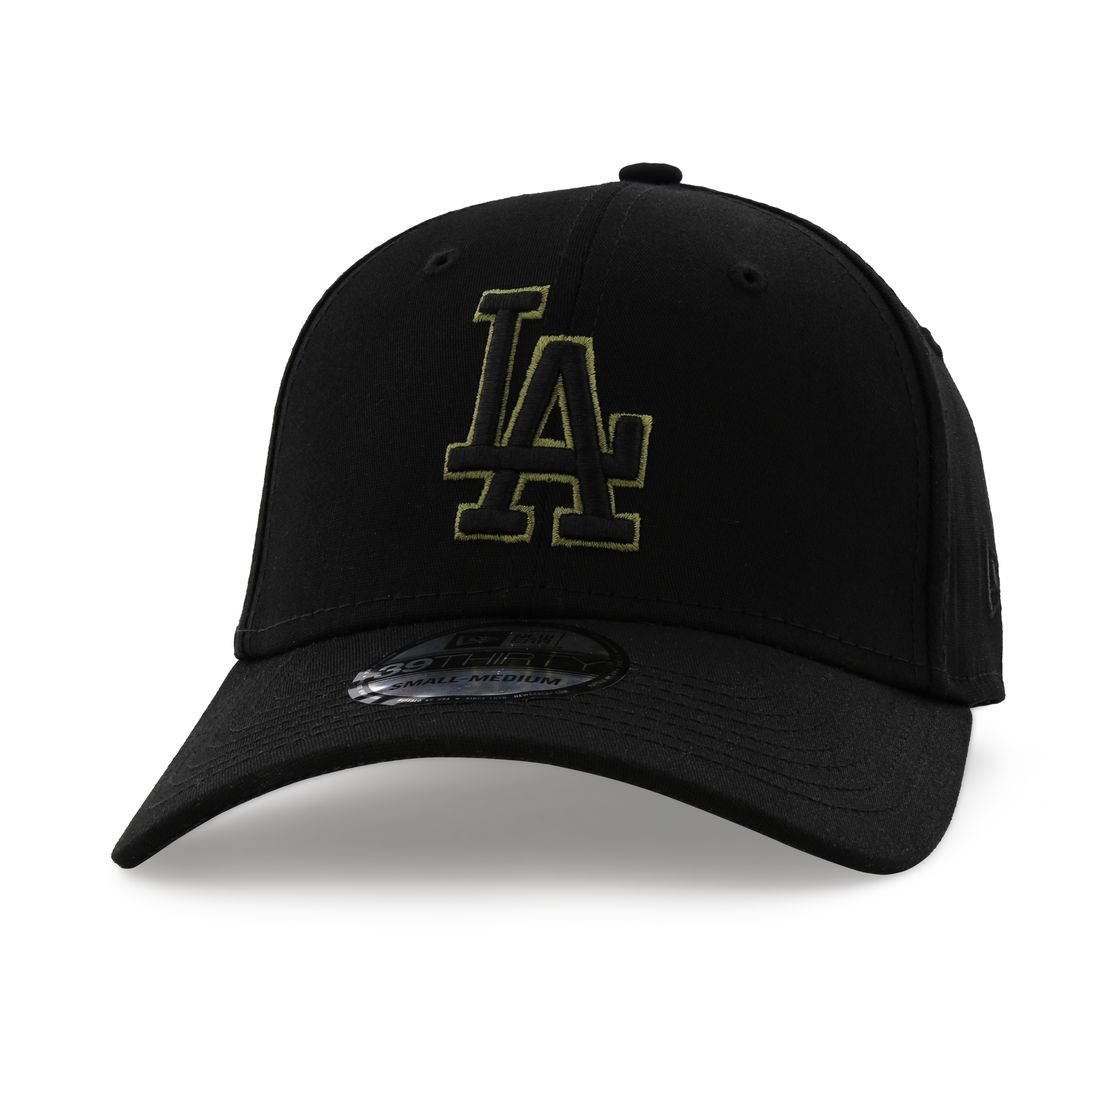 قبعة للرجال تحمل علامة لفريق لوس أنجلوس دودجرو بلون متناغم من نيو إيرا لون أسود S/M